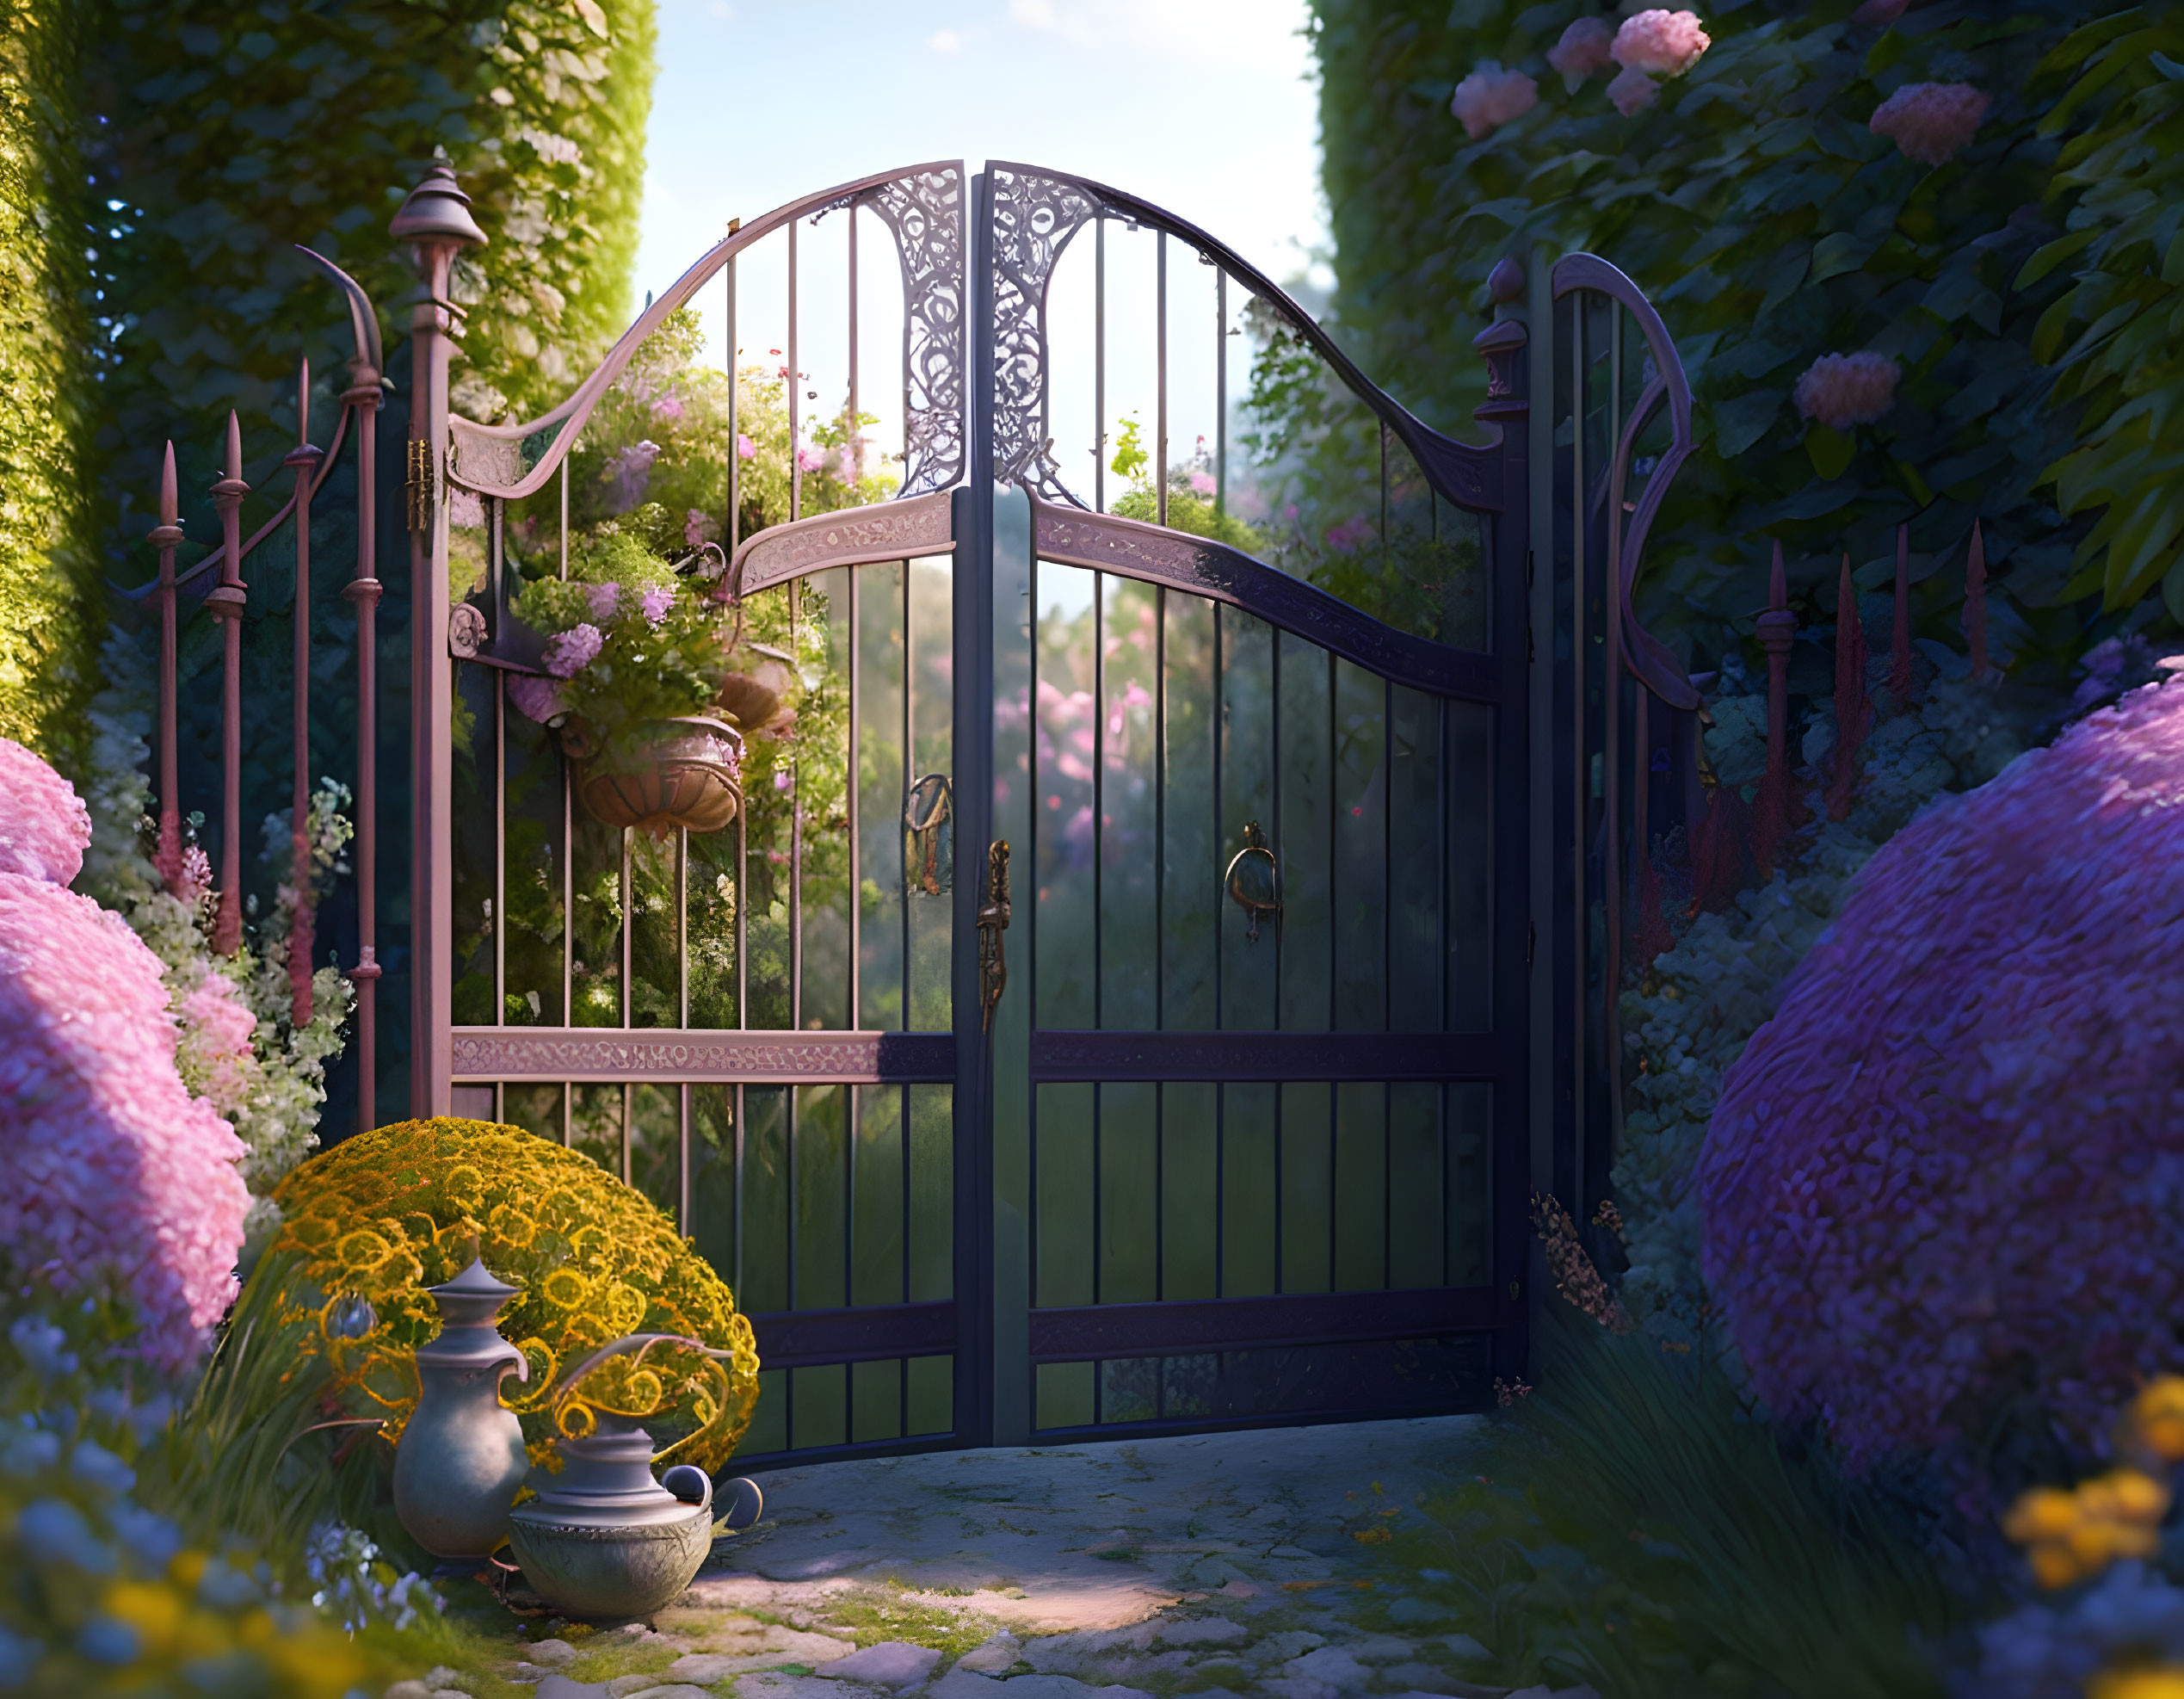  A gate to the secret garden